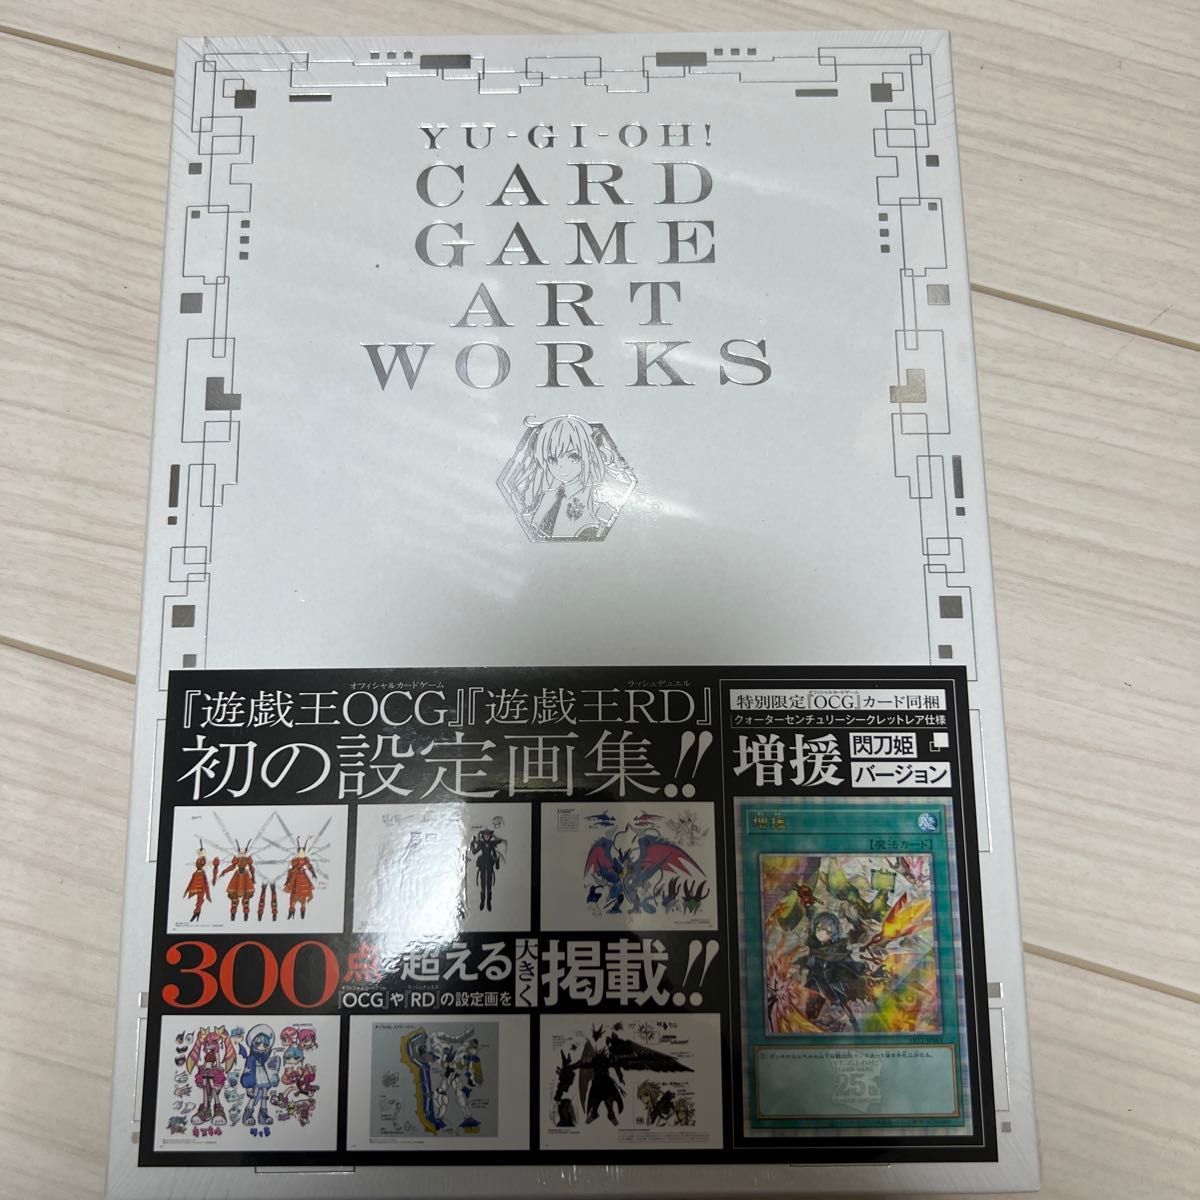 柔らかい 遊戯王CARD GAME ART WORKS 増援 25th アートワークス